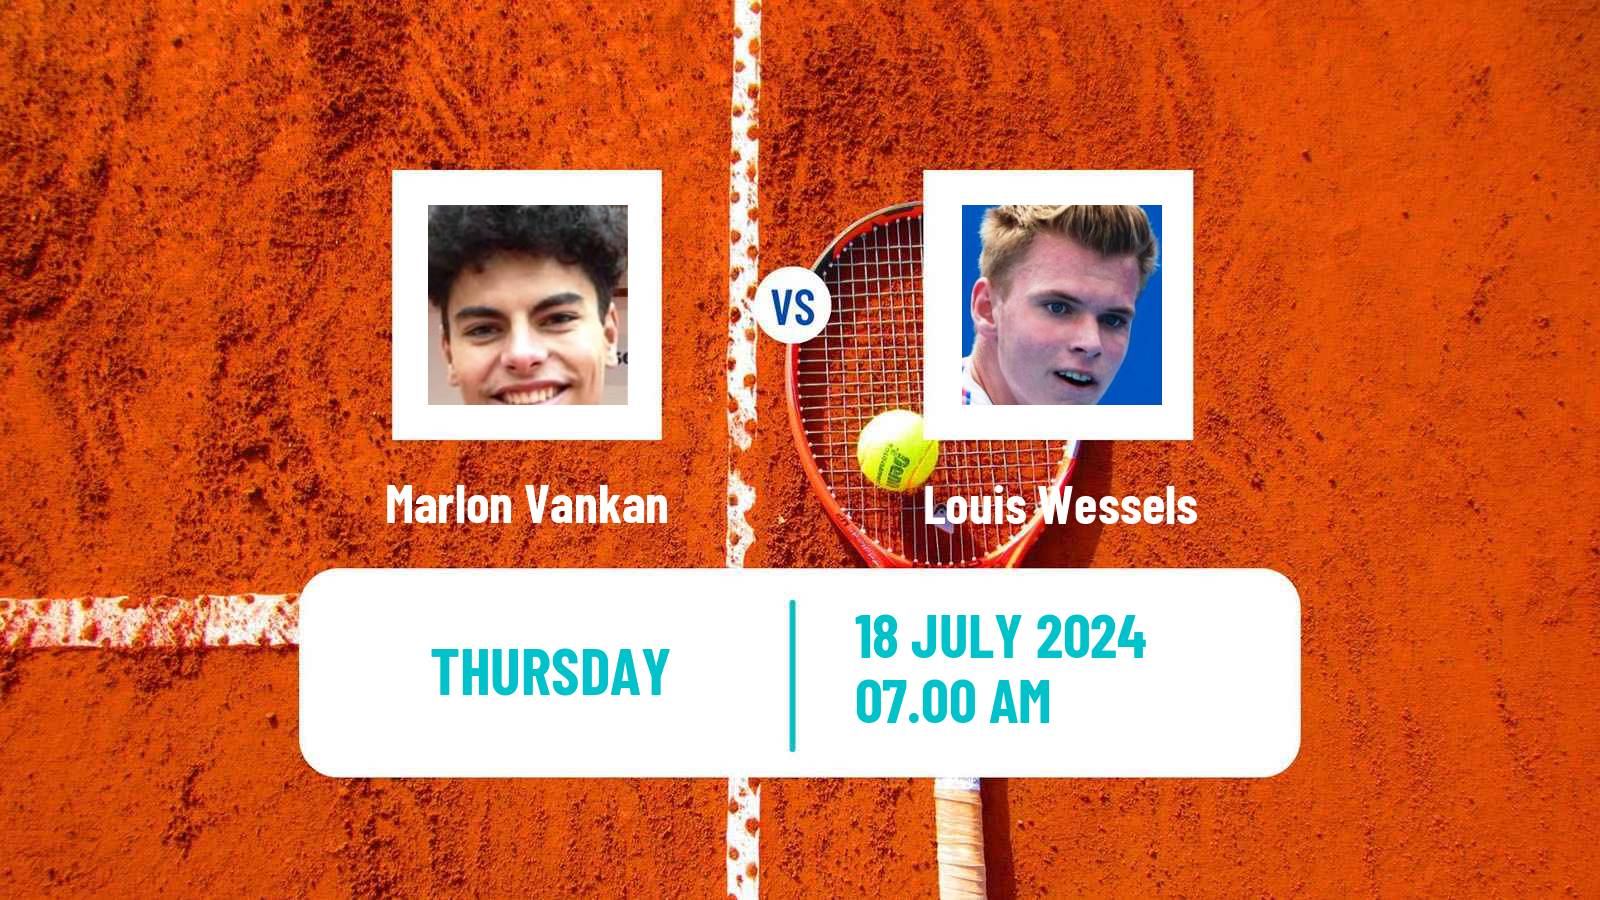 Tennis ITF M25 Esch Alzette 2 Men Marlon Vankan - Louis Wessels